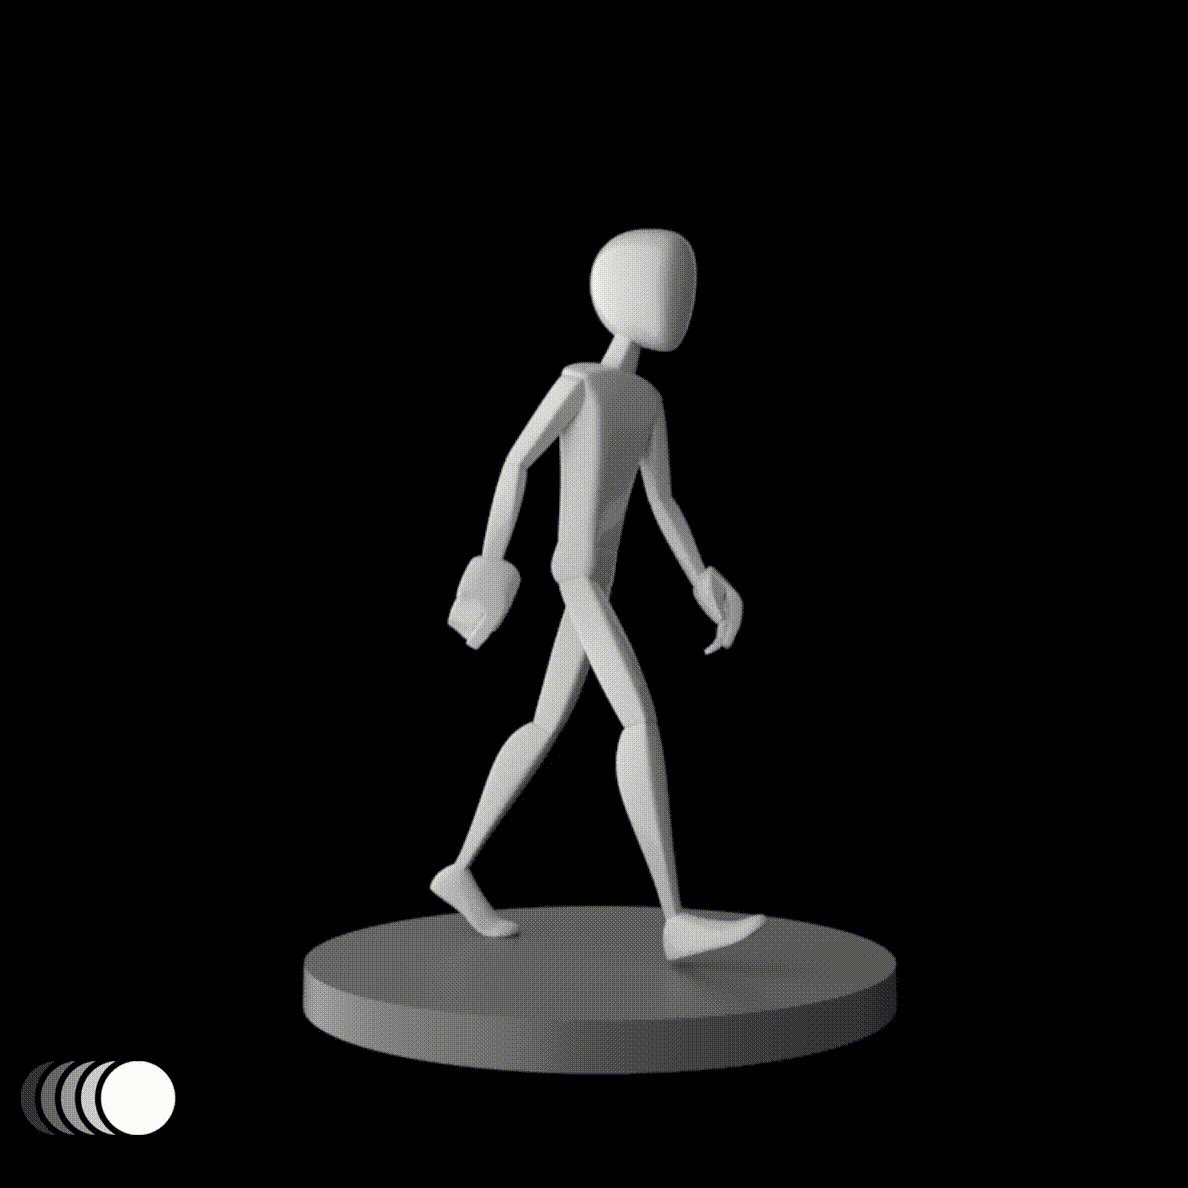 ArtStation - Walk Cycle: Animation Exercise